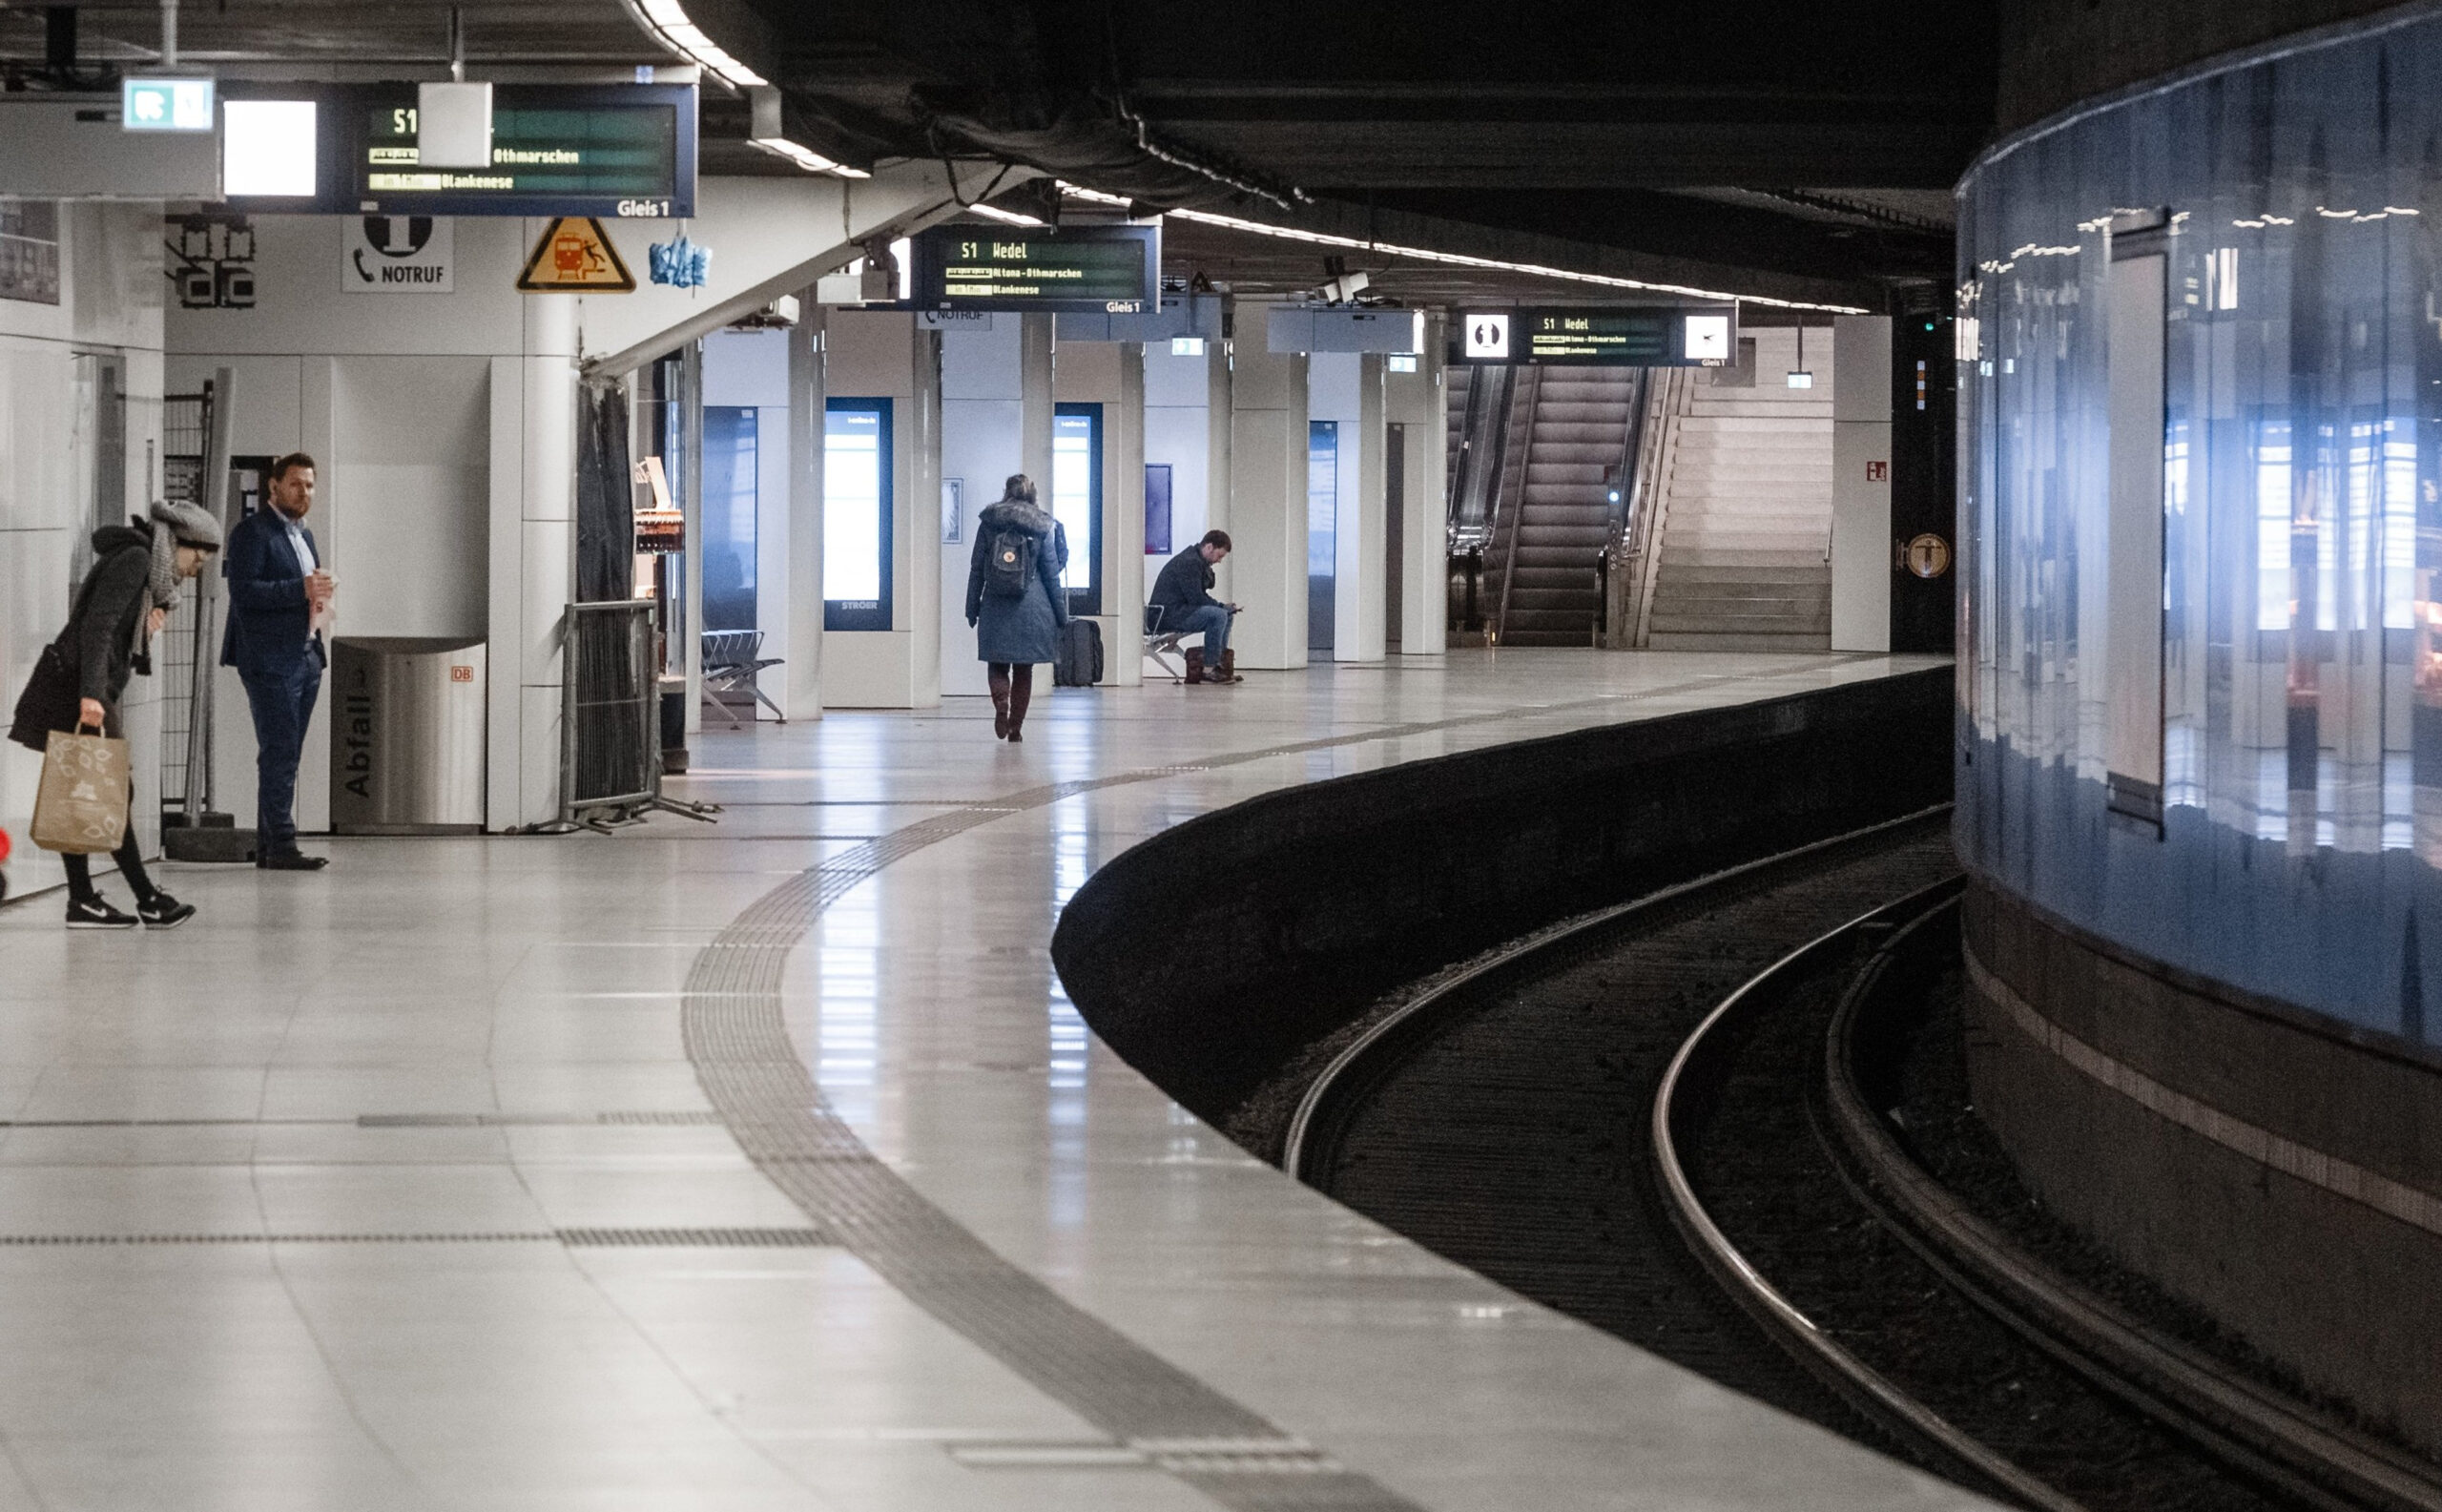 Fahrgäste warten im Bahnhof Jungfernstieg auf eine S-Bahn